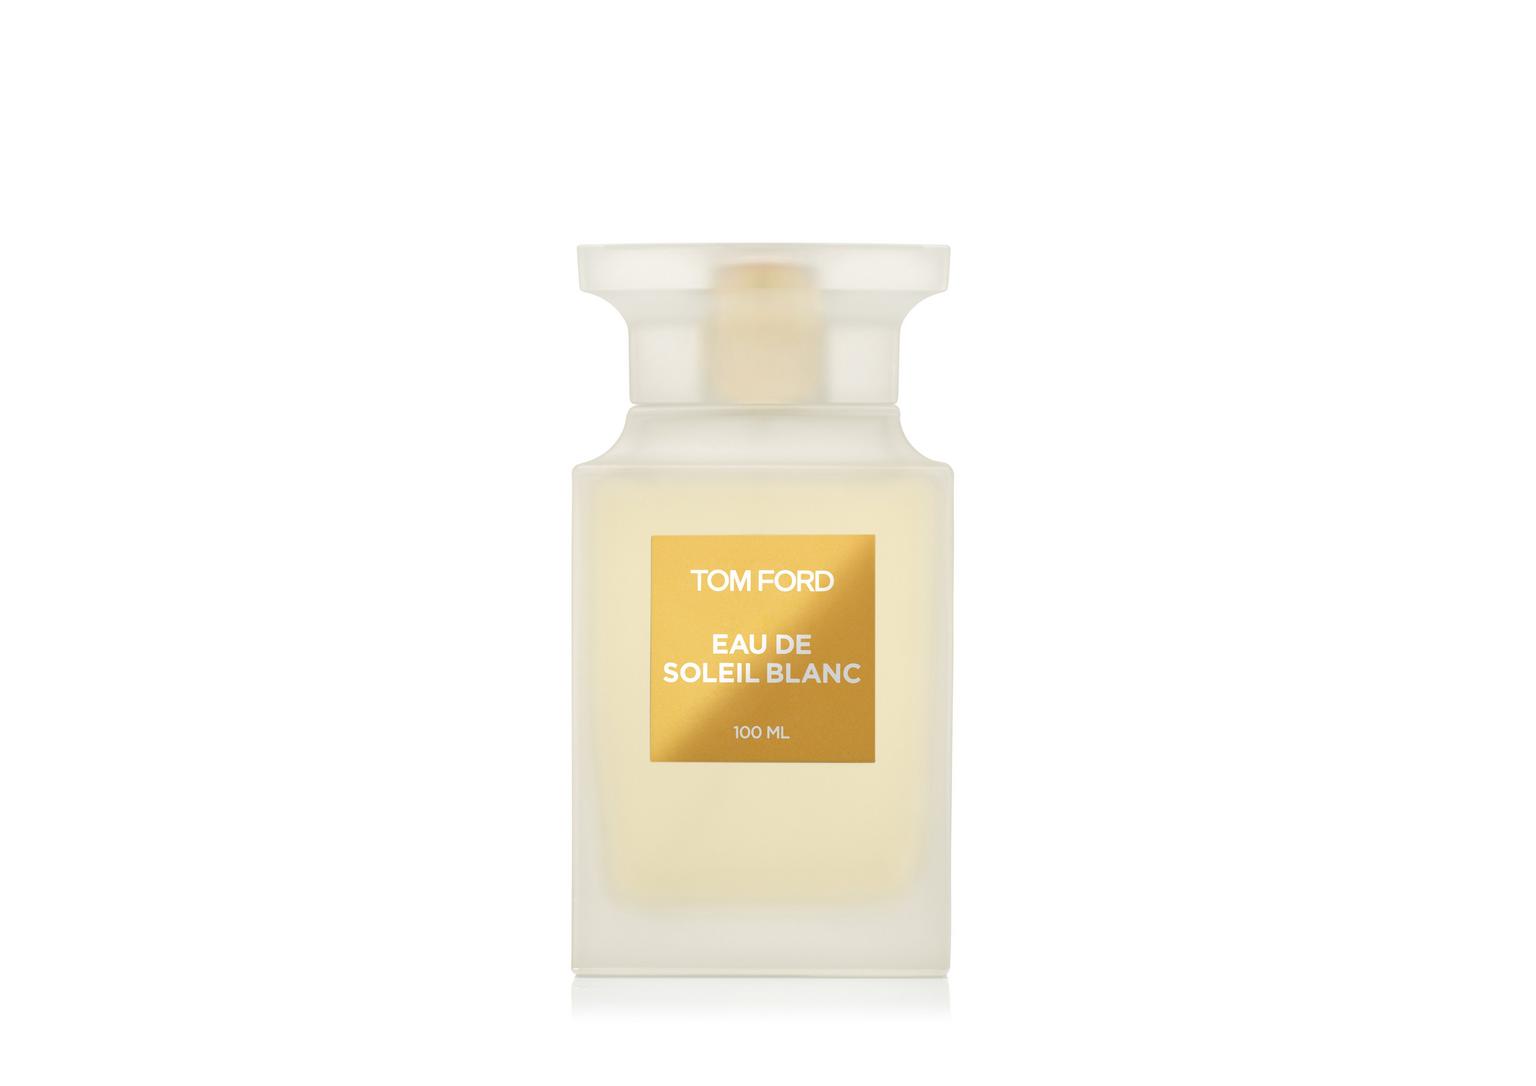 Eau de Soleil Blanc Tom Ford Parfum - ein neues Parfum für Frauen und